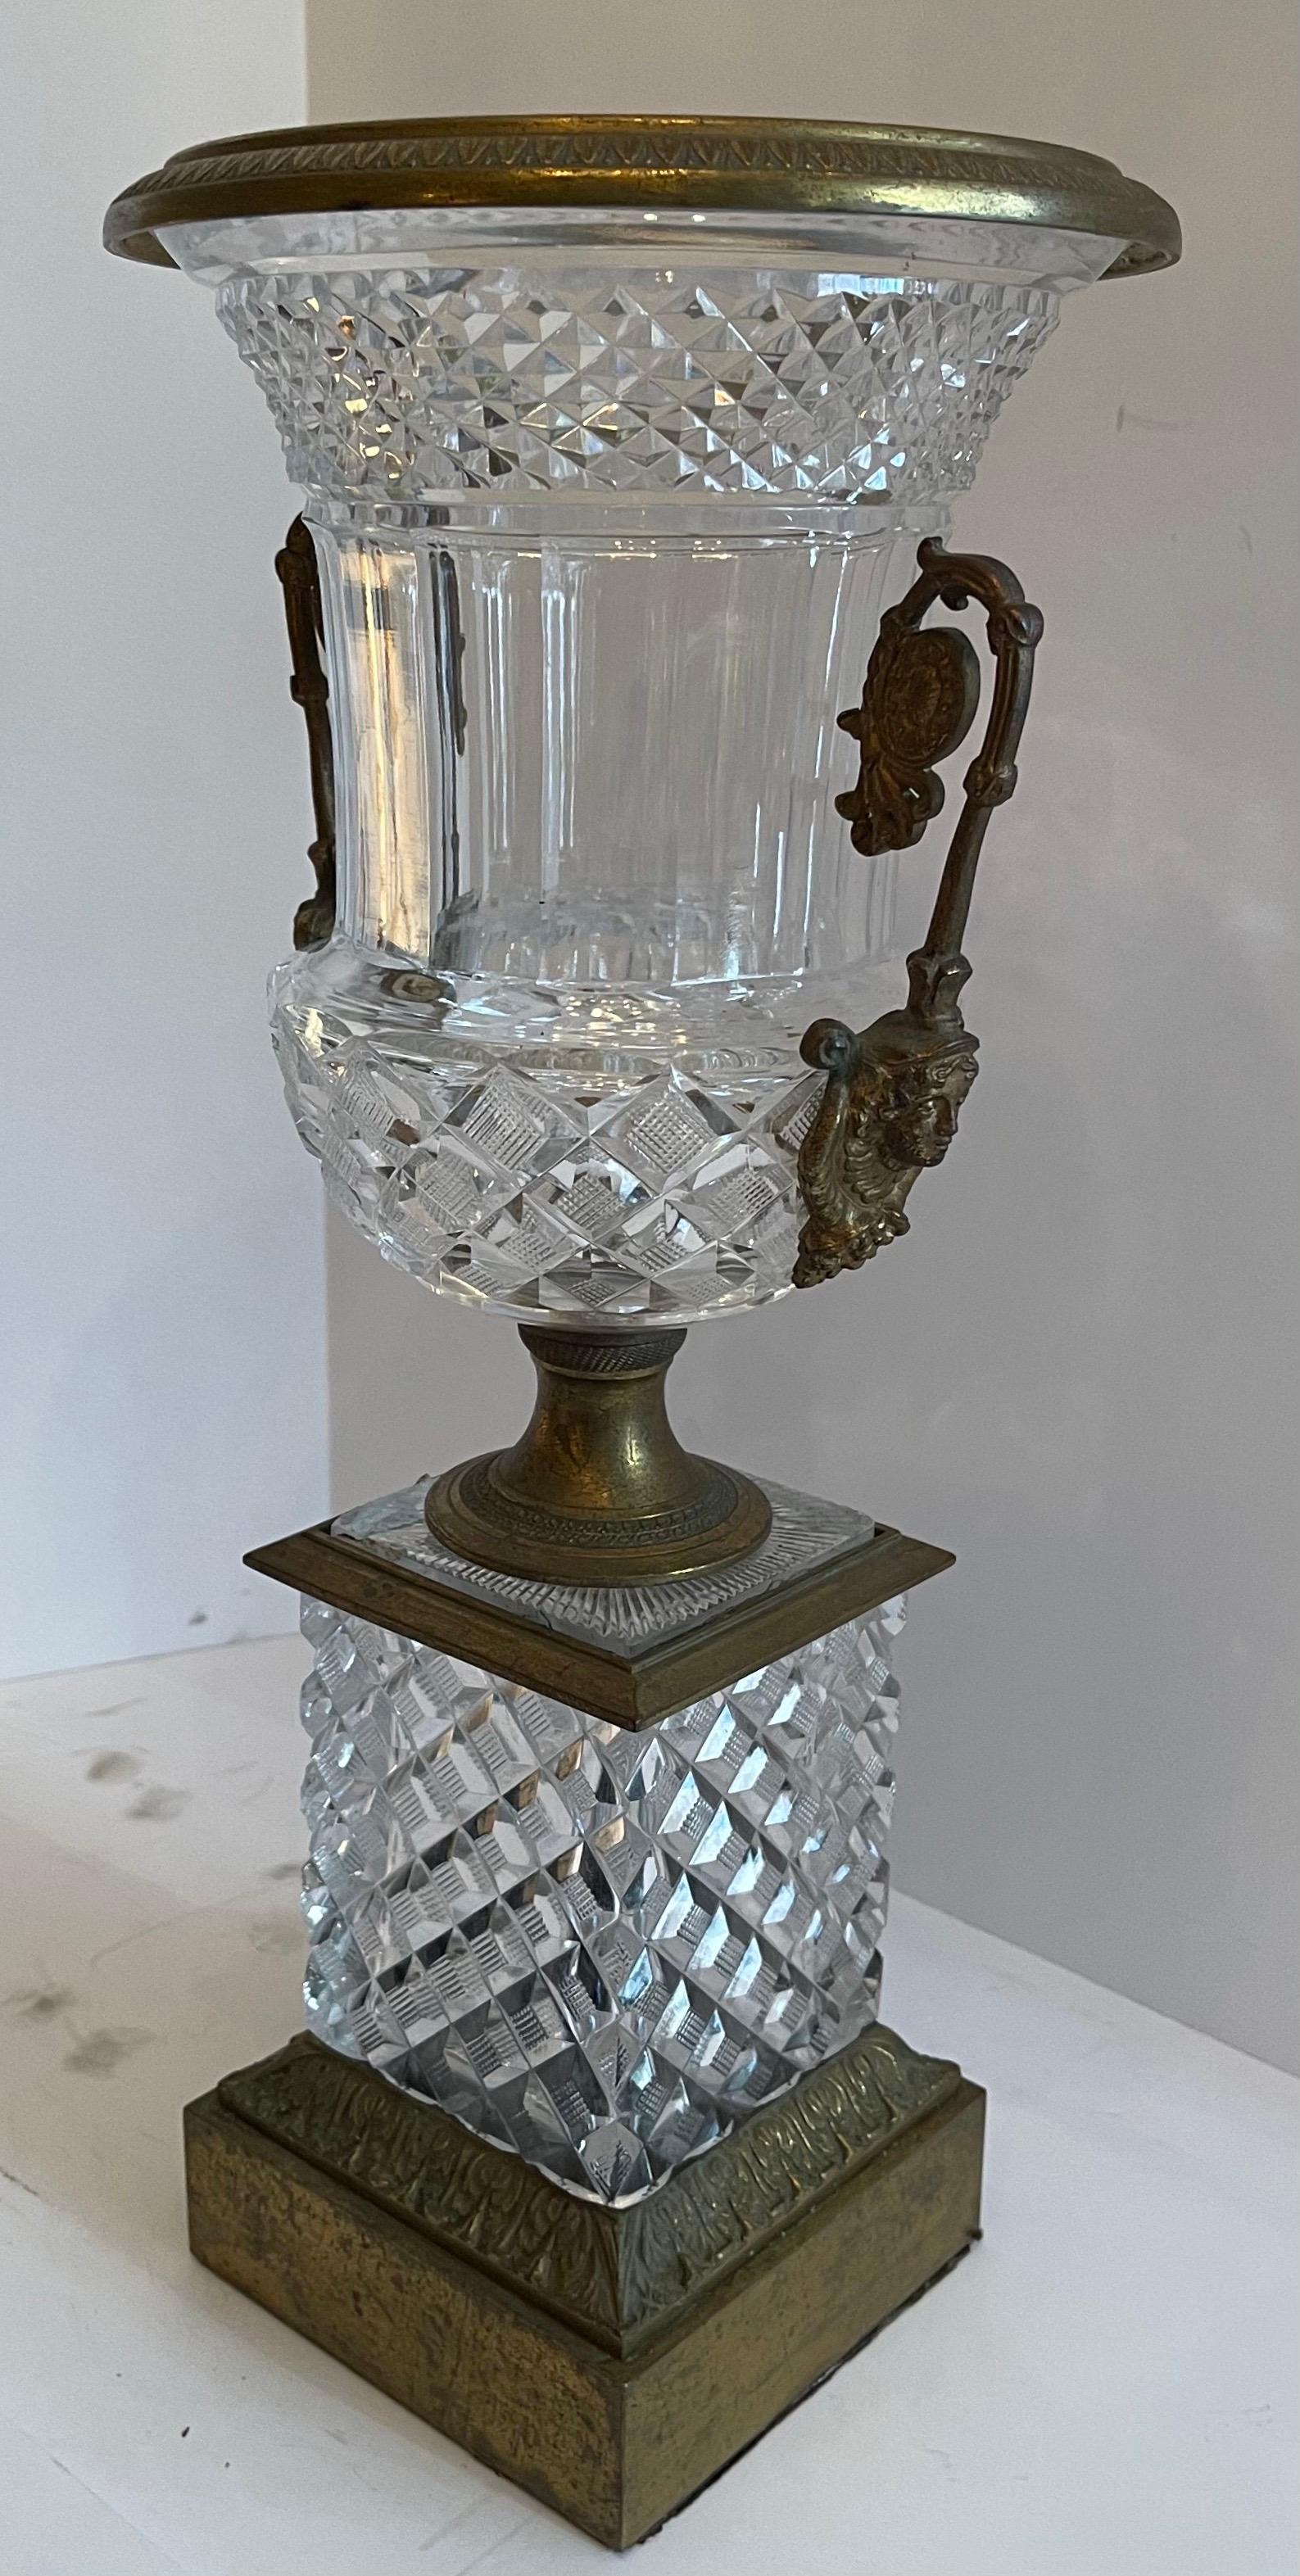 Eine wunderbare Französisch Empire / neoklassischen geschliffenem Kristall und Bronze Ormolu montiert Urne mit Dame Figur Griffe Mittelstück.

  